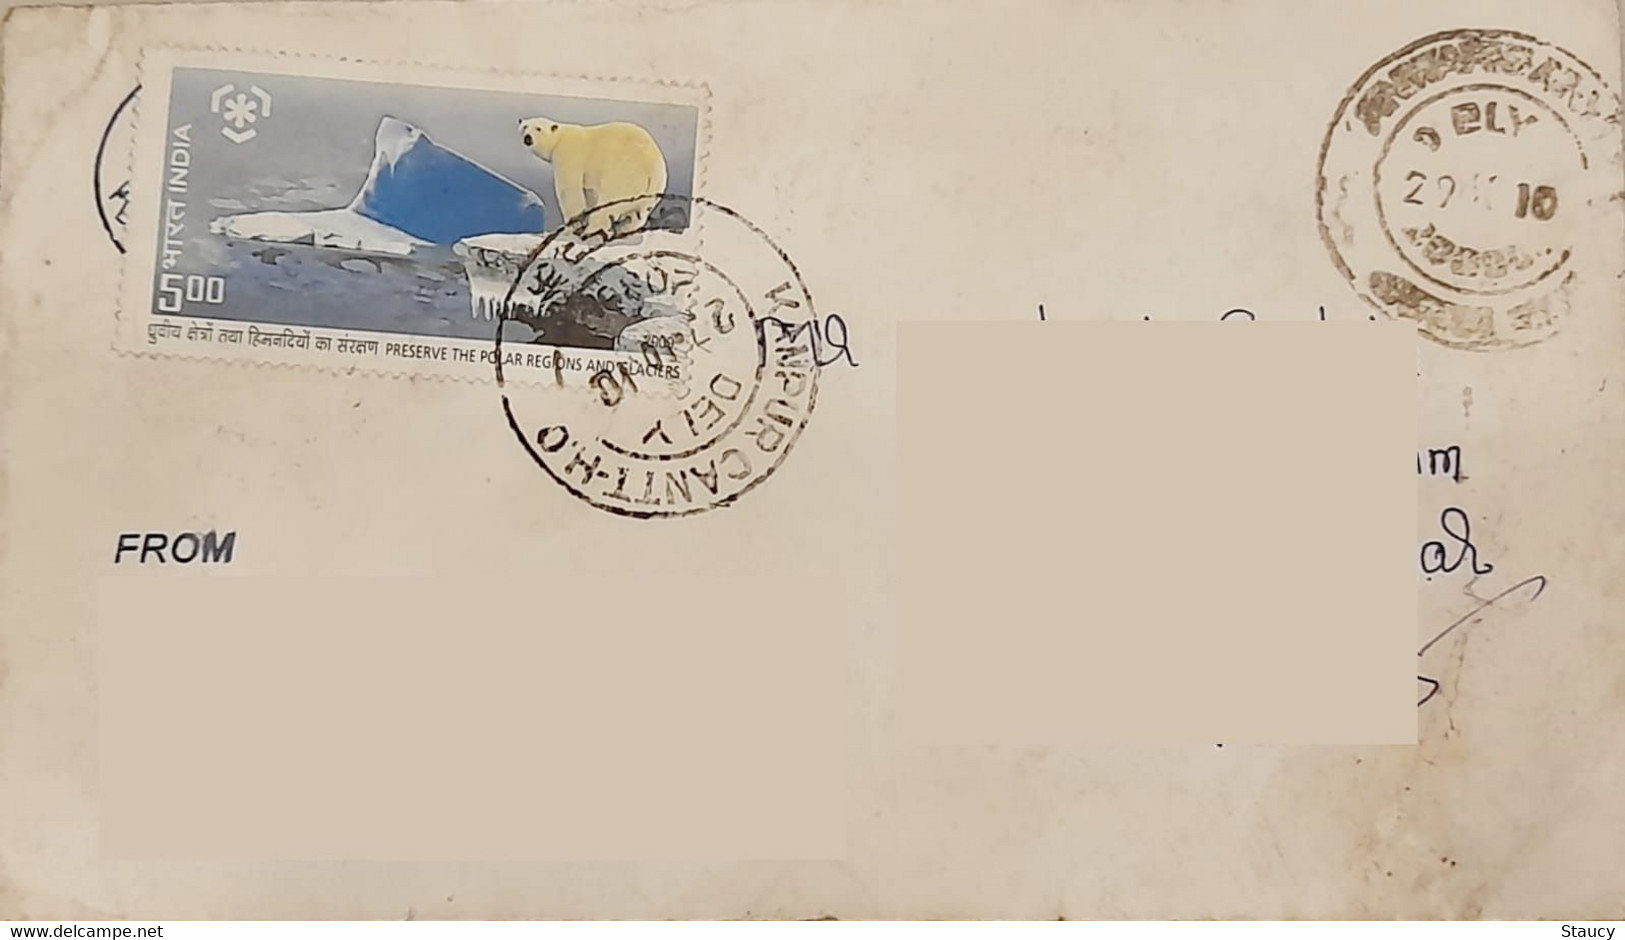 INDIA 2010 Preserve Polar Region & Glaciers Stamps Franked On Postal Cover As Per Scan - Préservation Des Régions Polaires & Glaciers